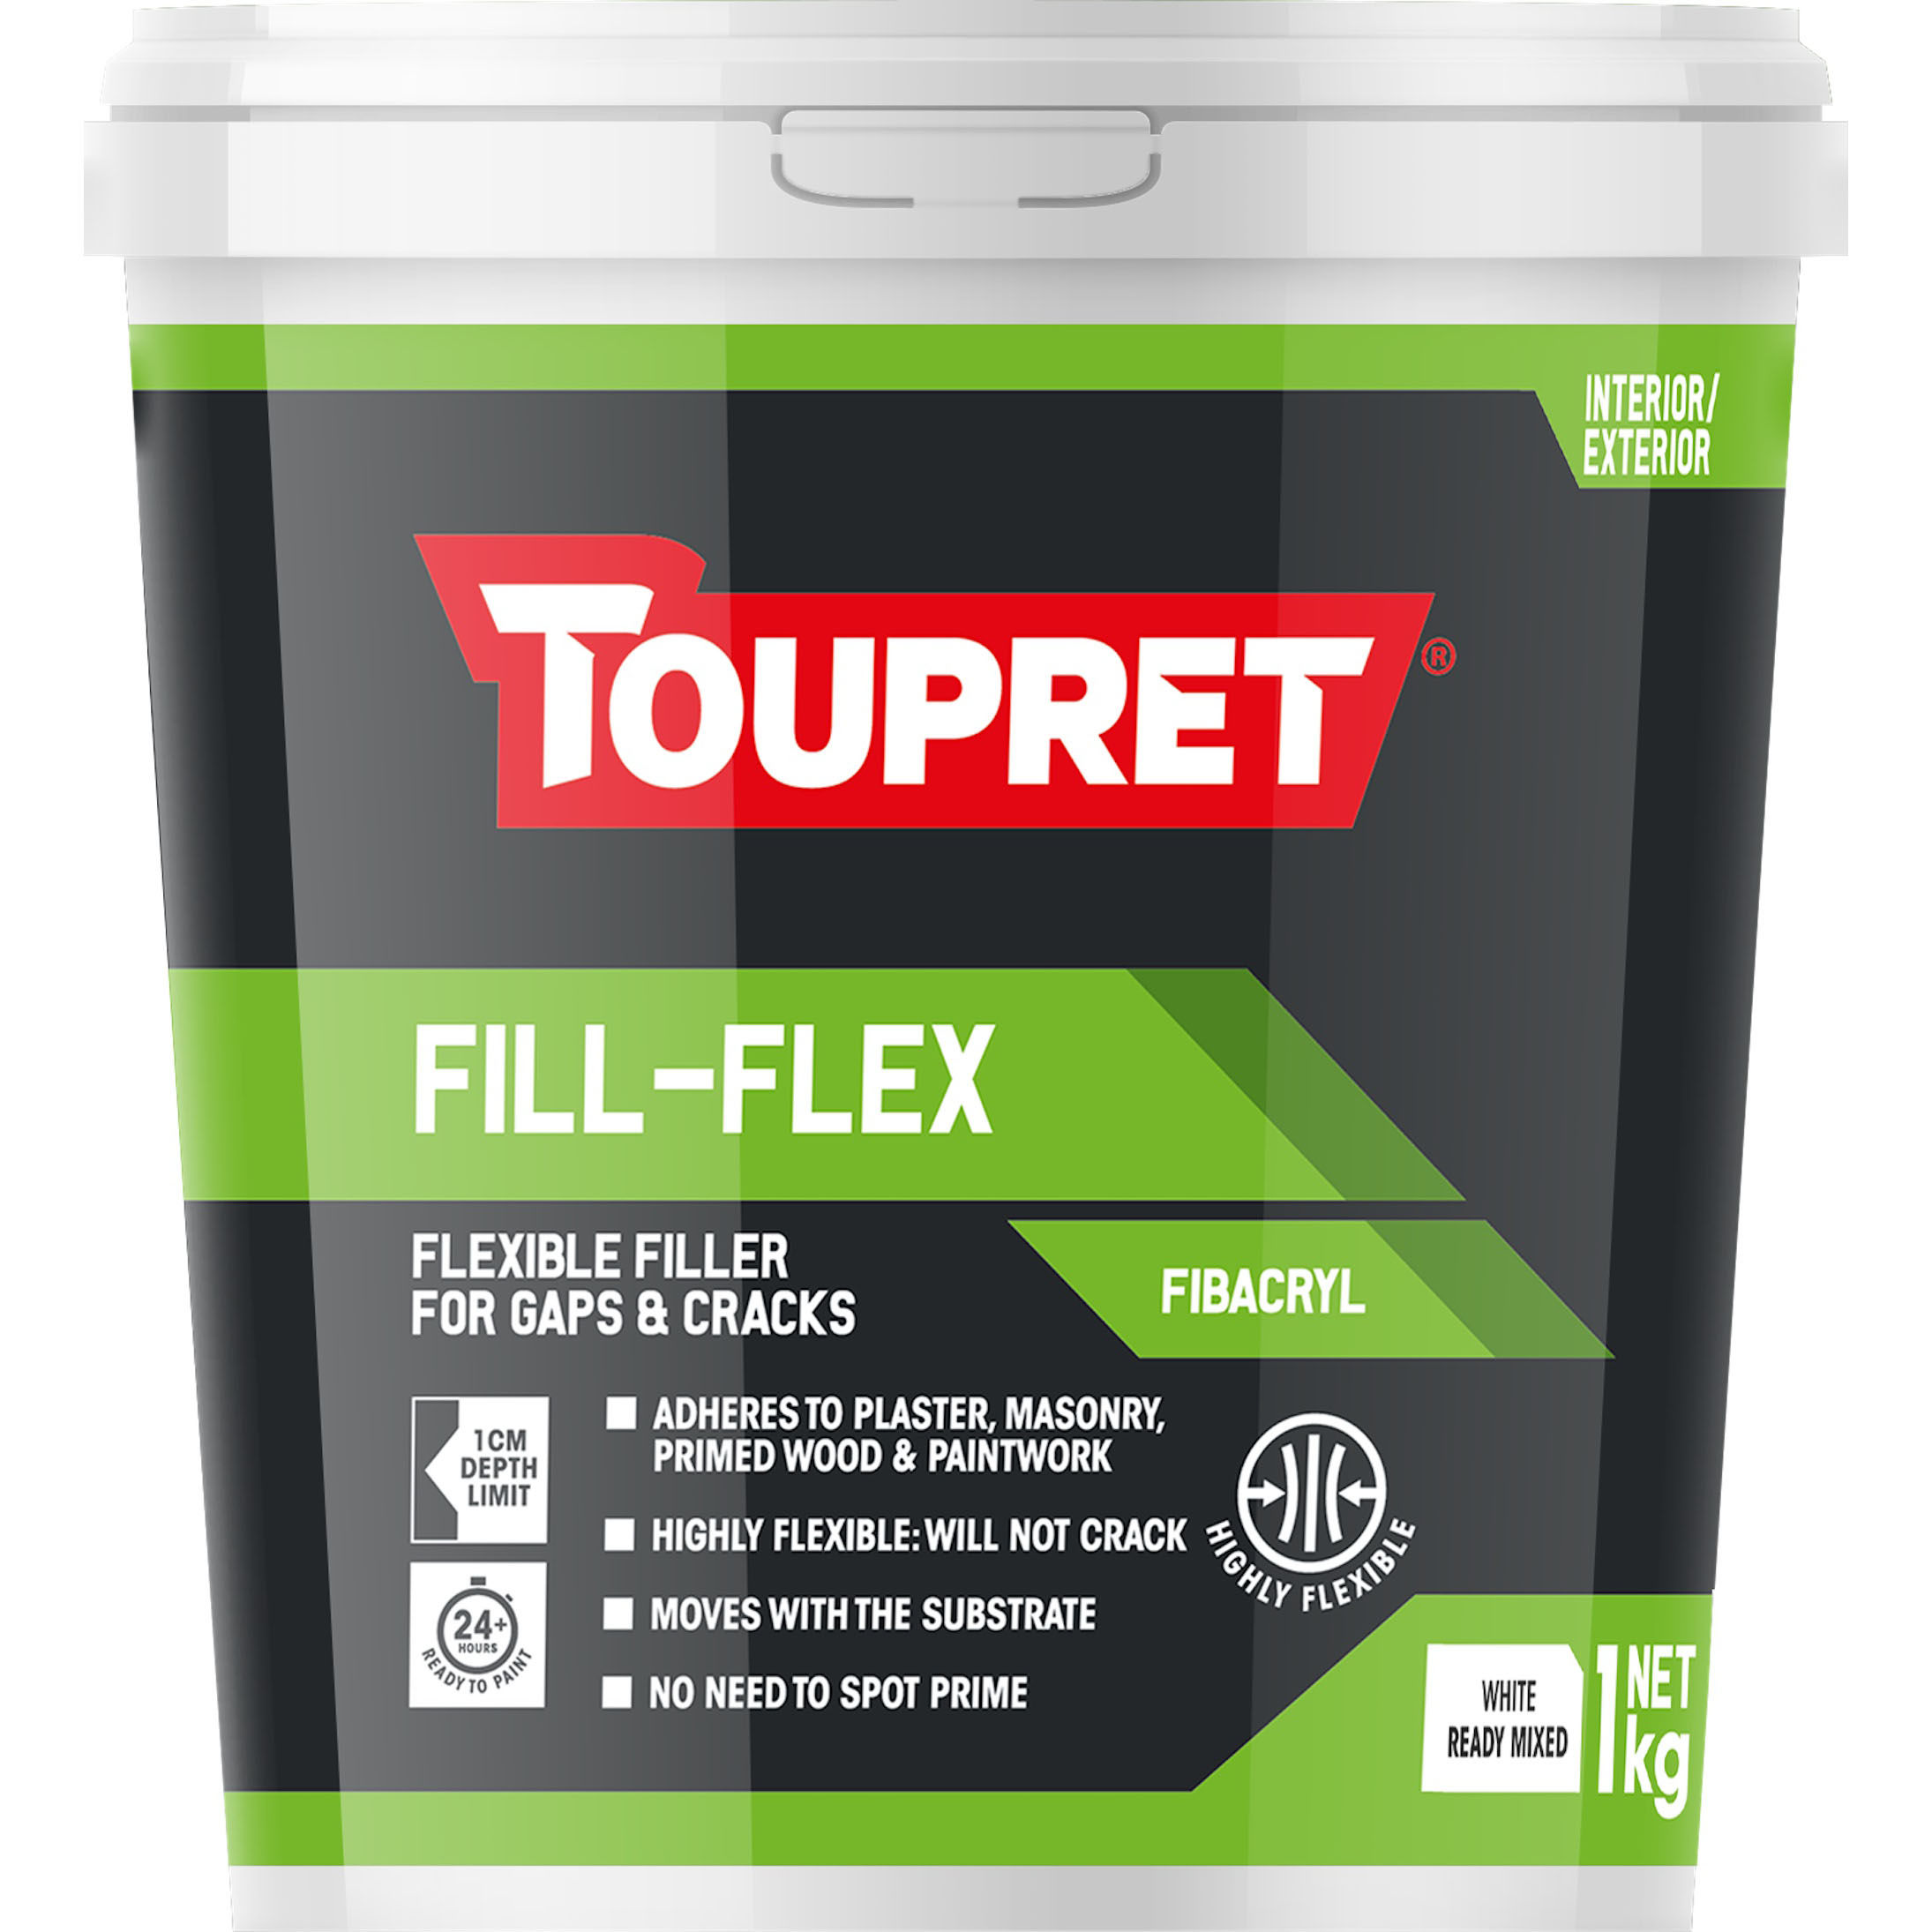 Toupret Fill-Flex Fibacryl 1kg